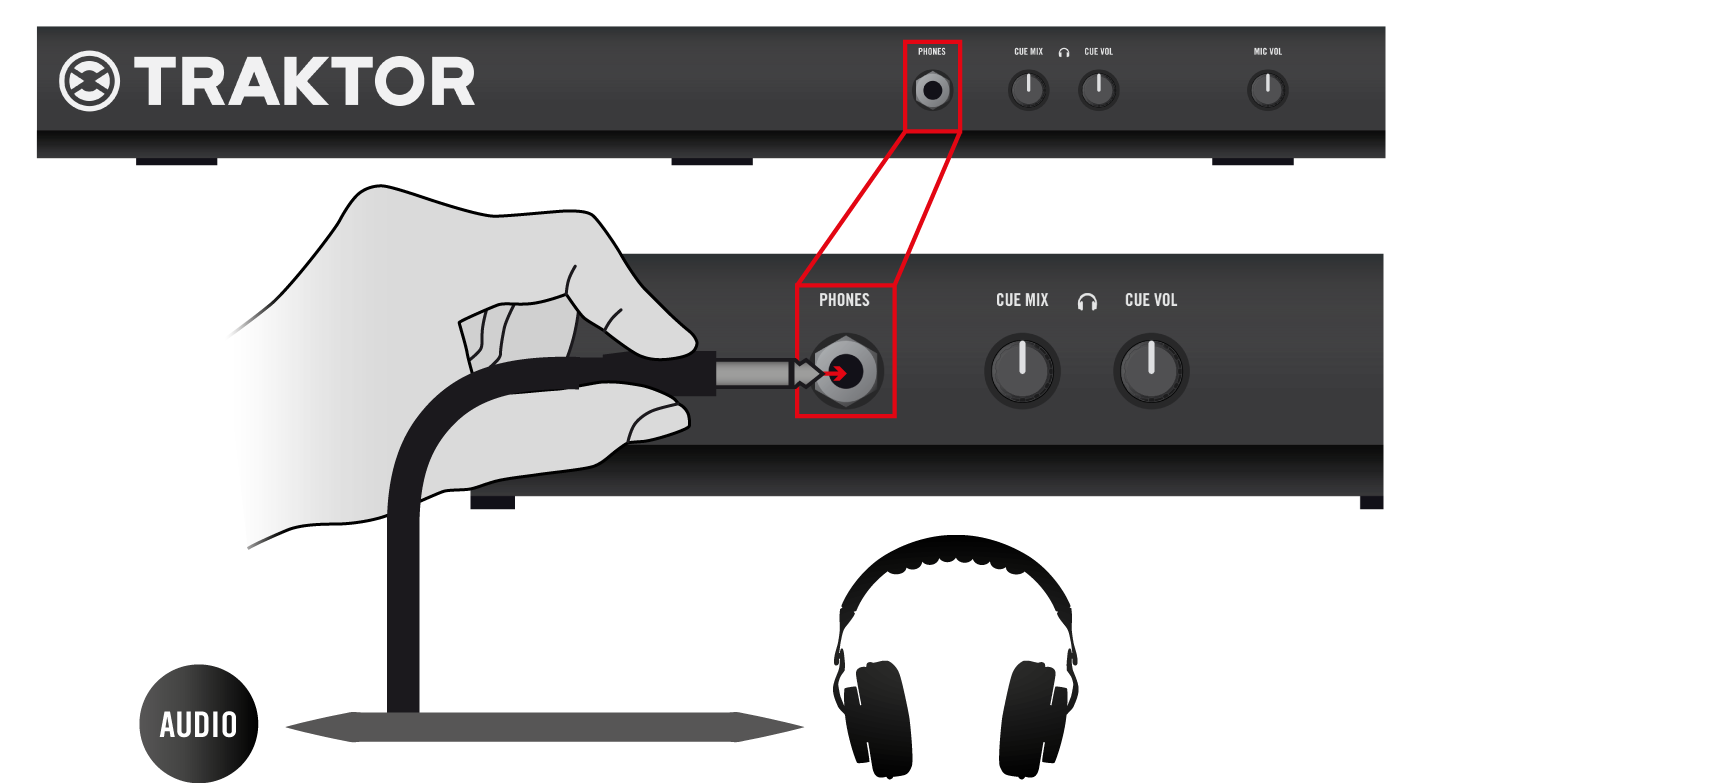 Verwendung des S4 mit einem ios-gerät Kopfhörer anschließen 5.